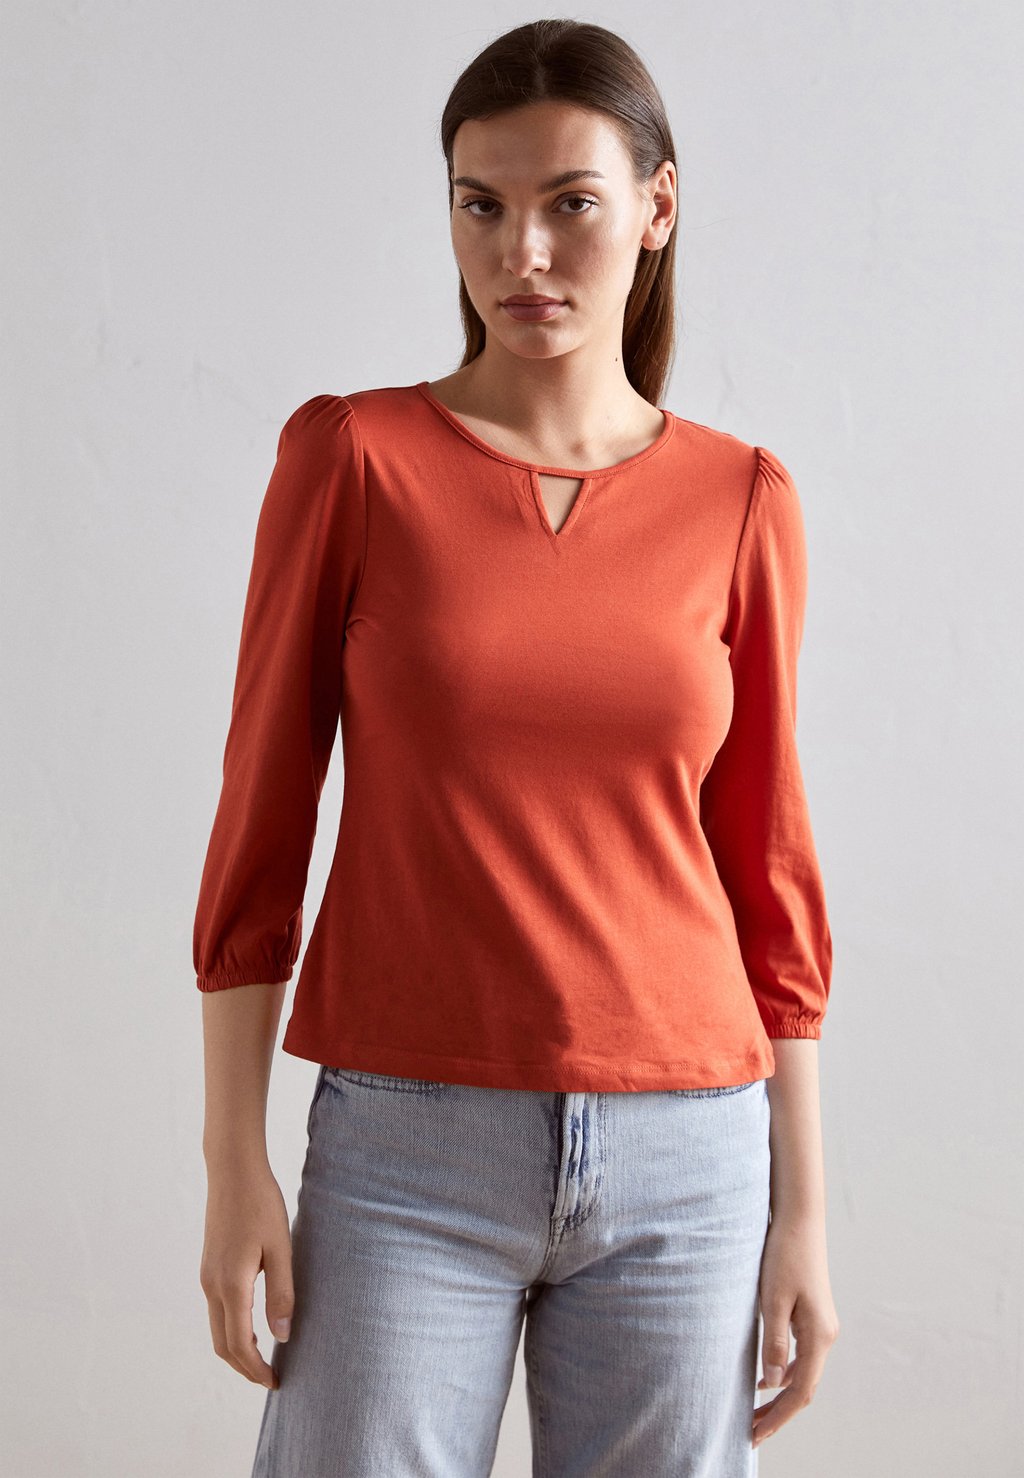 Рубашка с длинным рукавом Anna Field, красный рубашка с длинным рукавом anna field